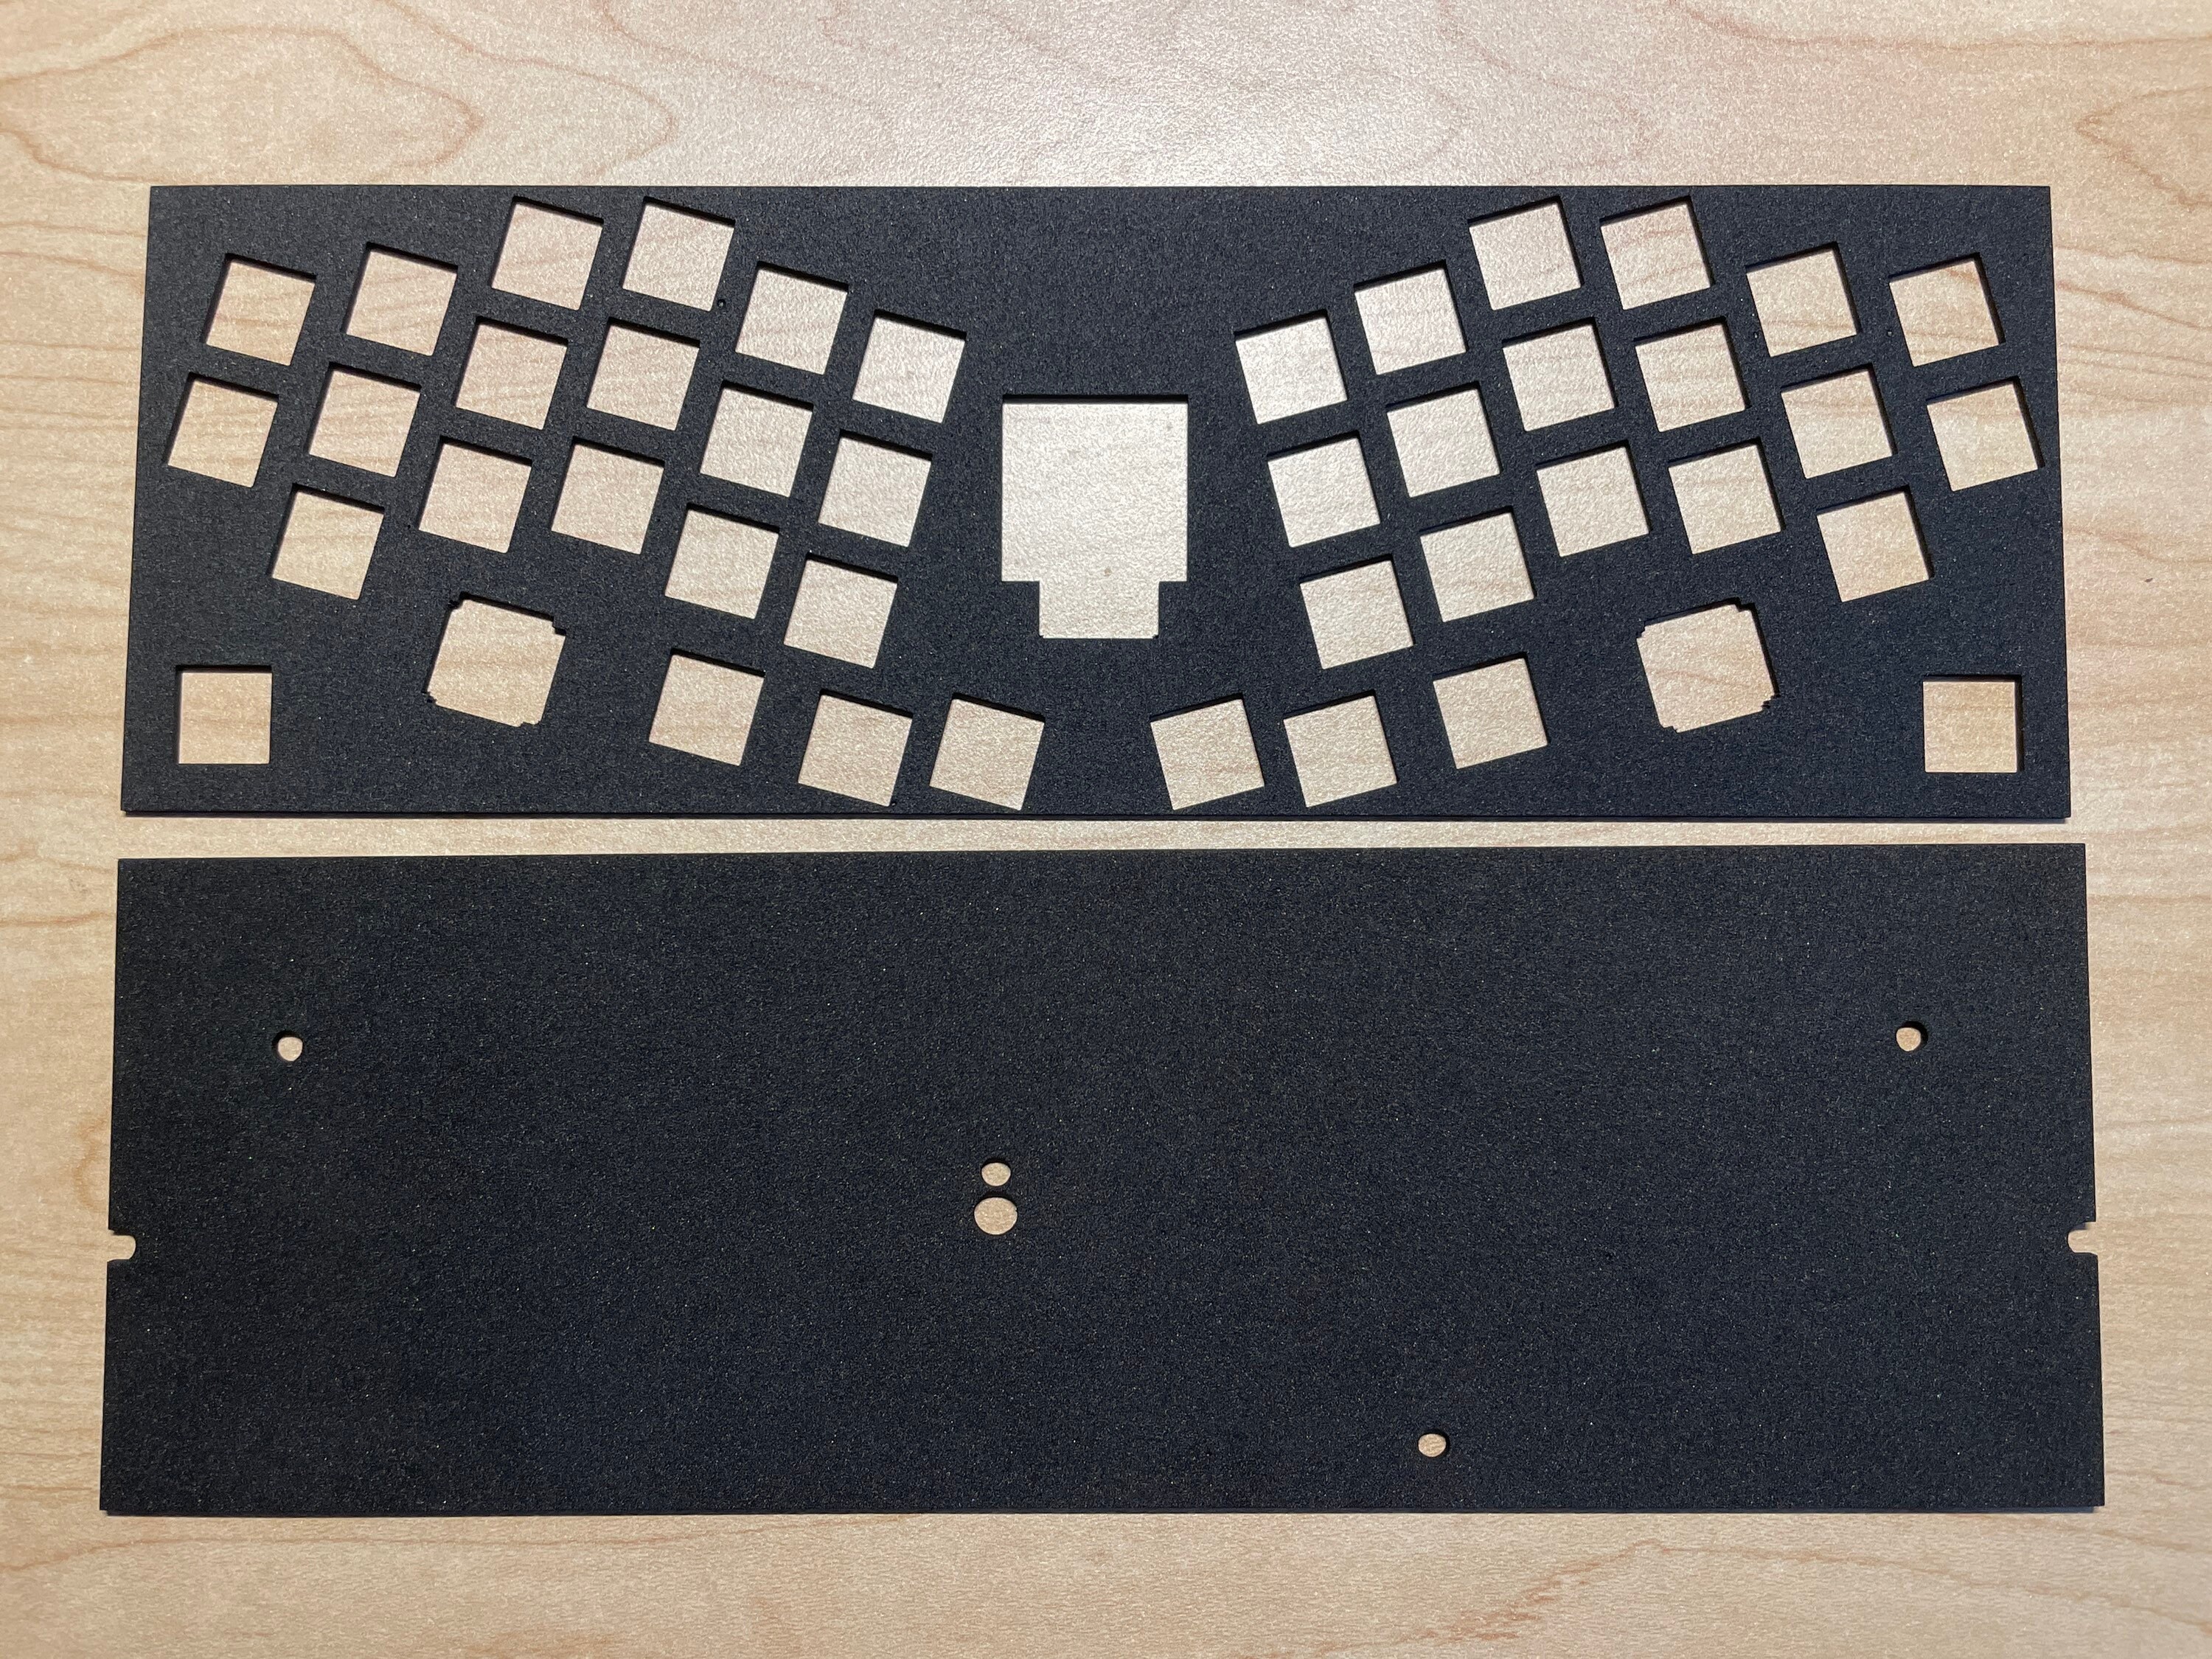 Keyboard Plate Dampening Foam for 60% Keyboards by Kelowna 